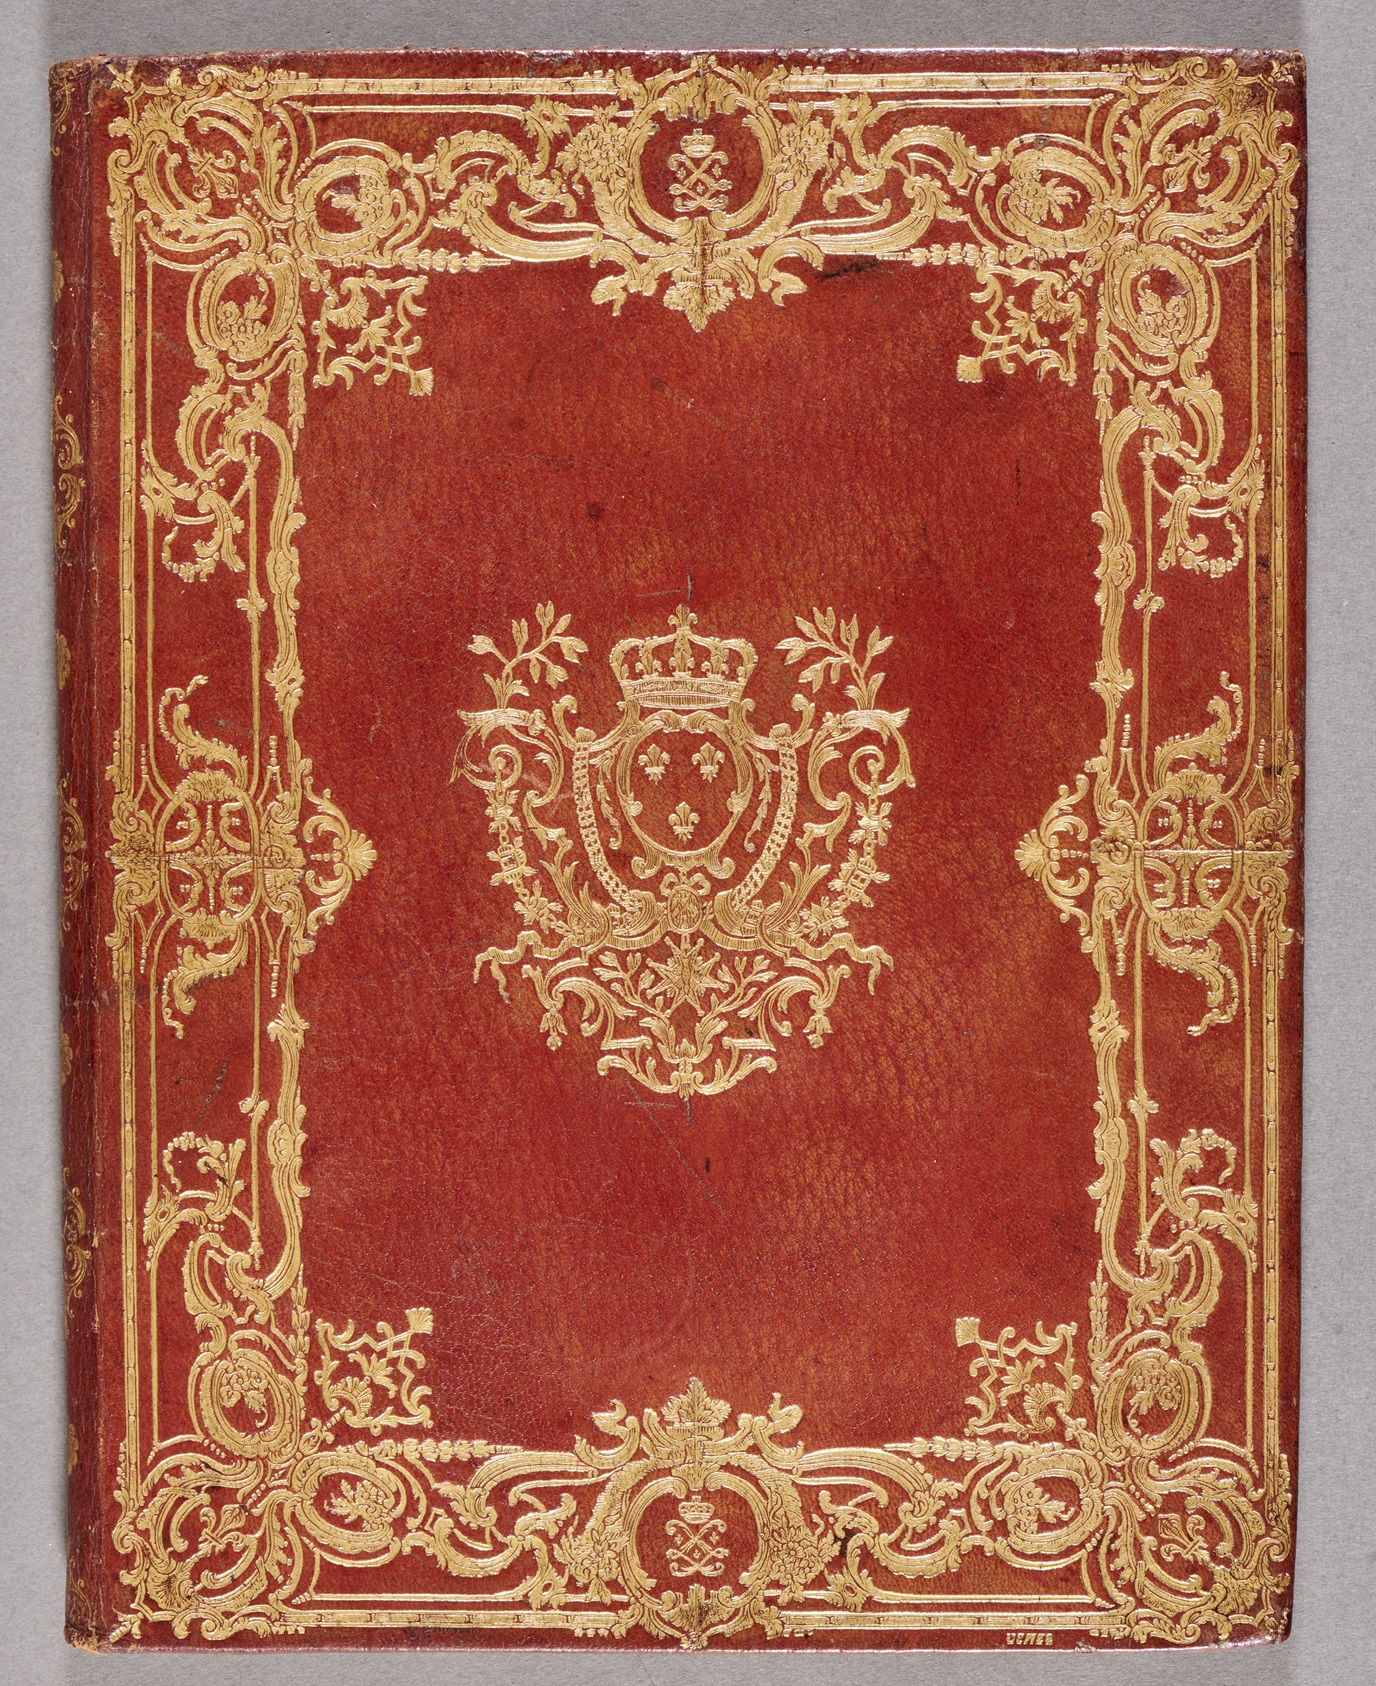 Porte-documents aux armes de Louis XV